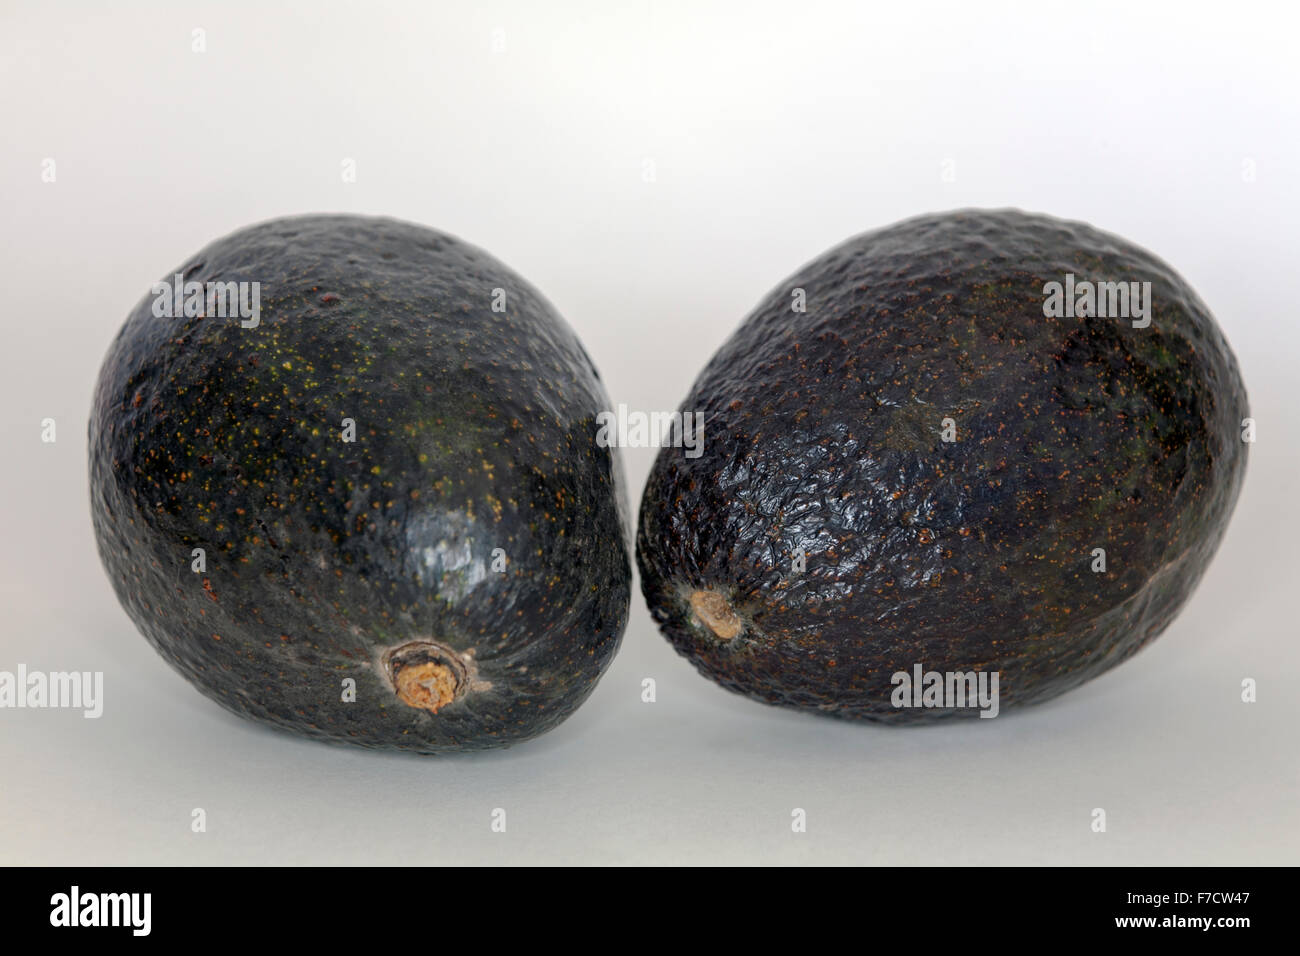 Two whole avocados Stock Photo